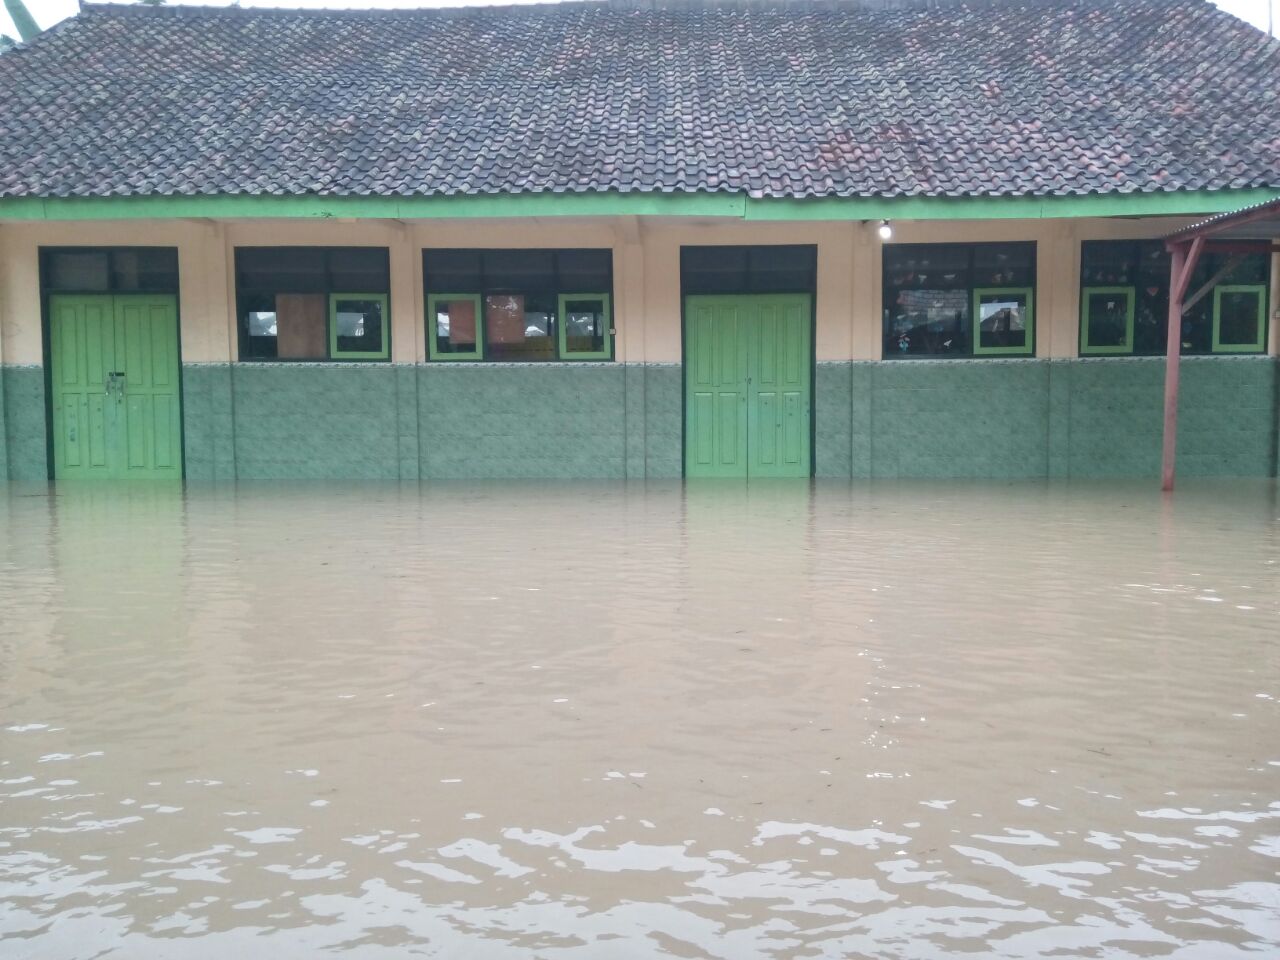 Sejumlah sekolah terendam air akibat banjir bandang di Bojonegoro yang terjadi pagi tadi, Kamis, 22 Februari 2018. (Foto: Istimewa)